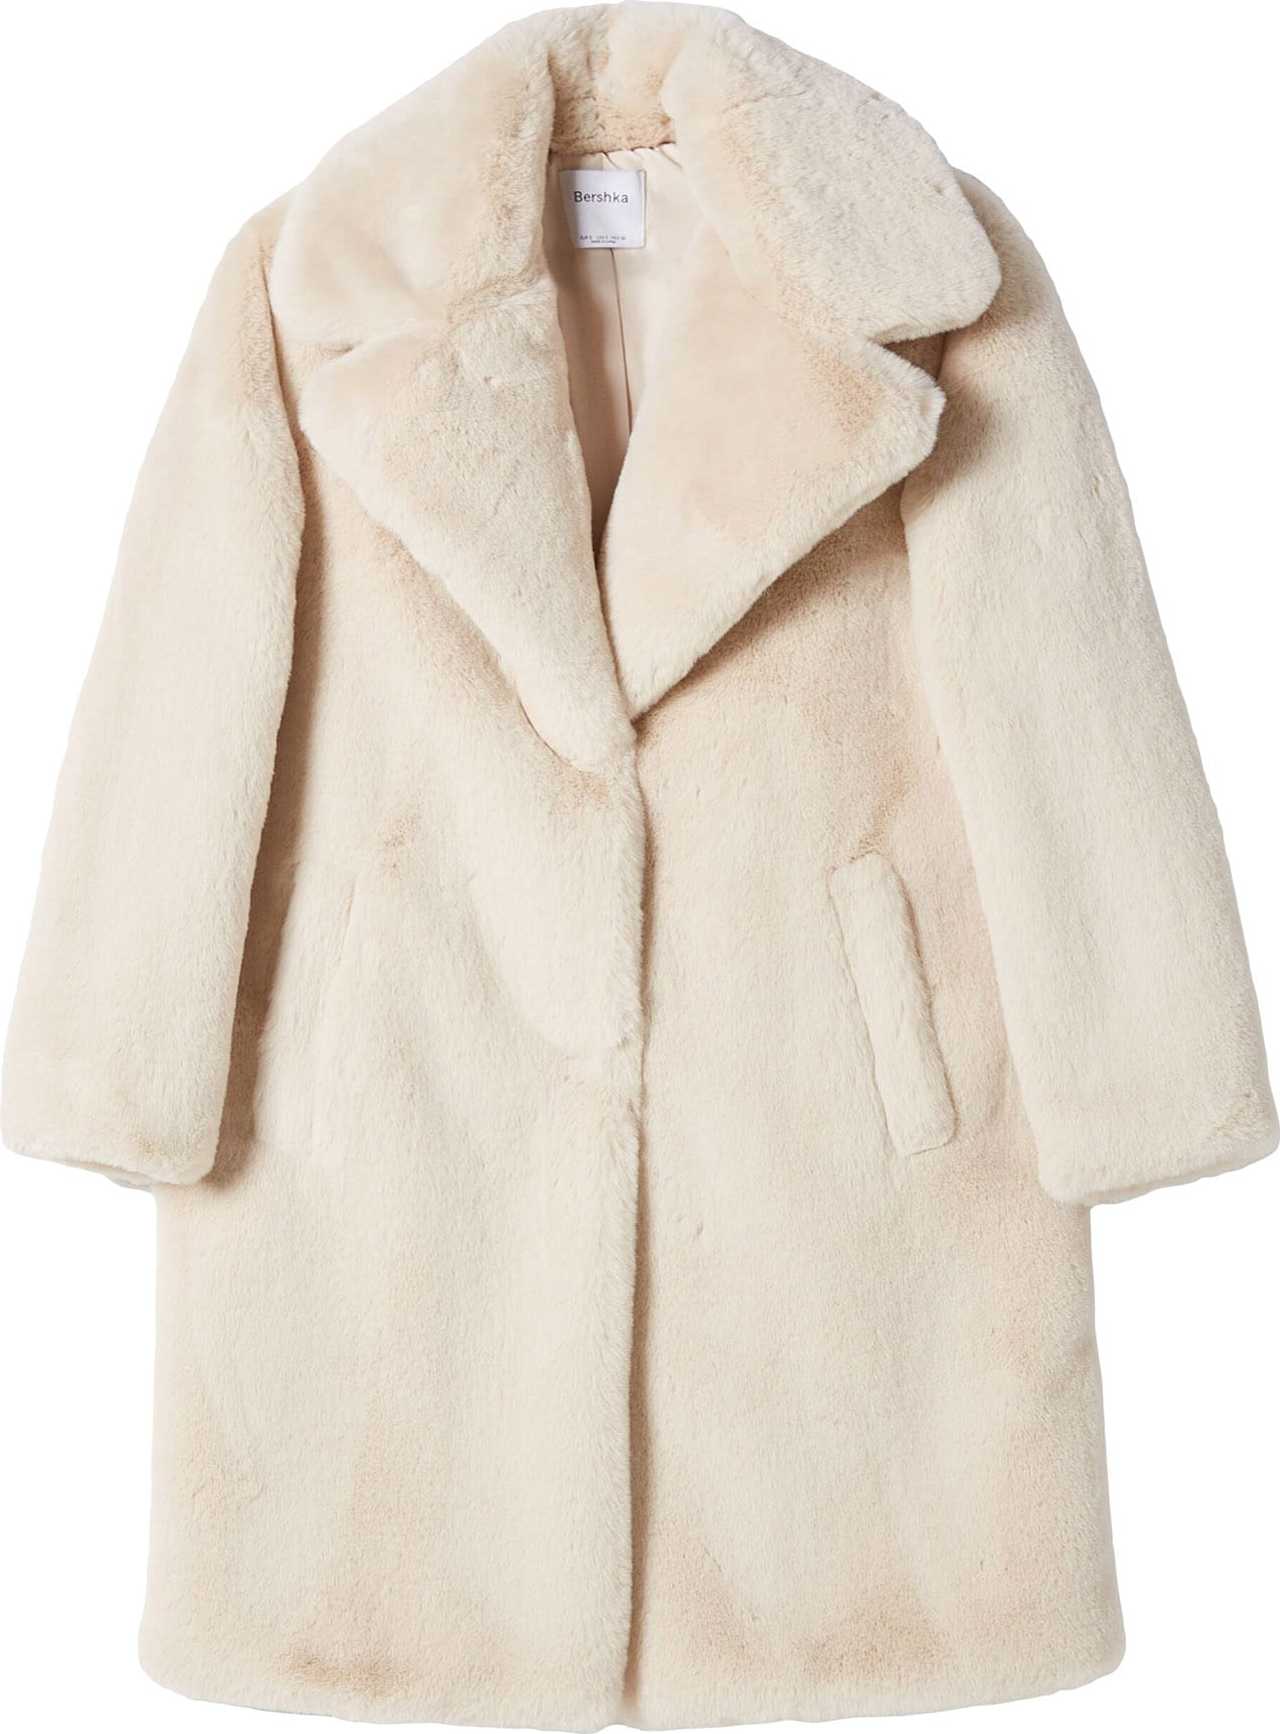 Bershka Zimní kabát přírodní bílá